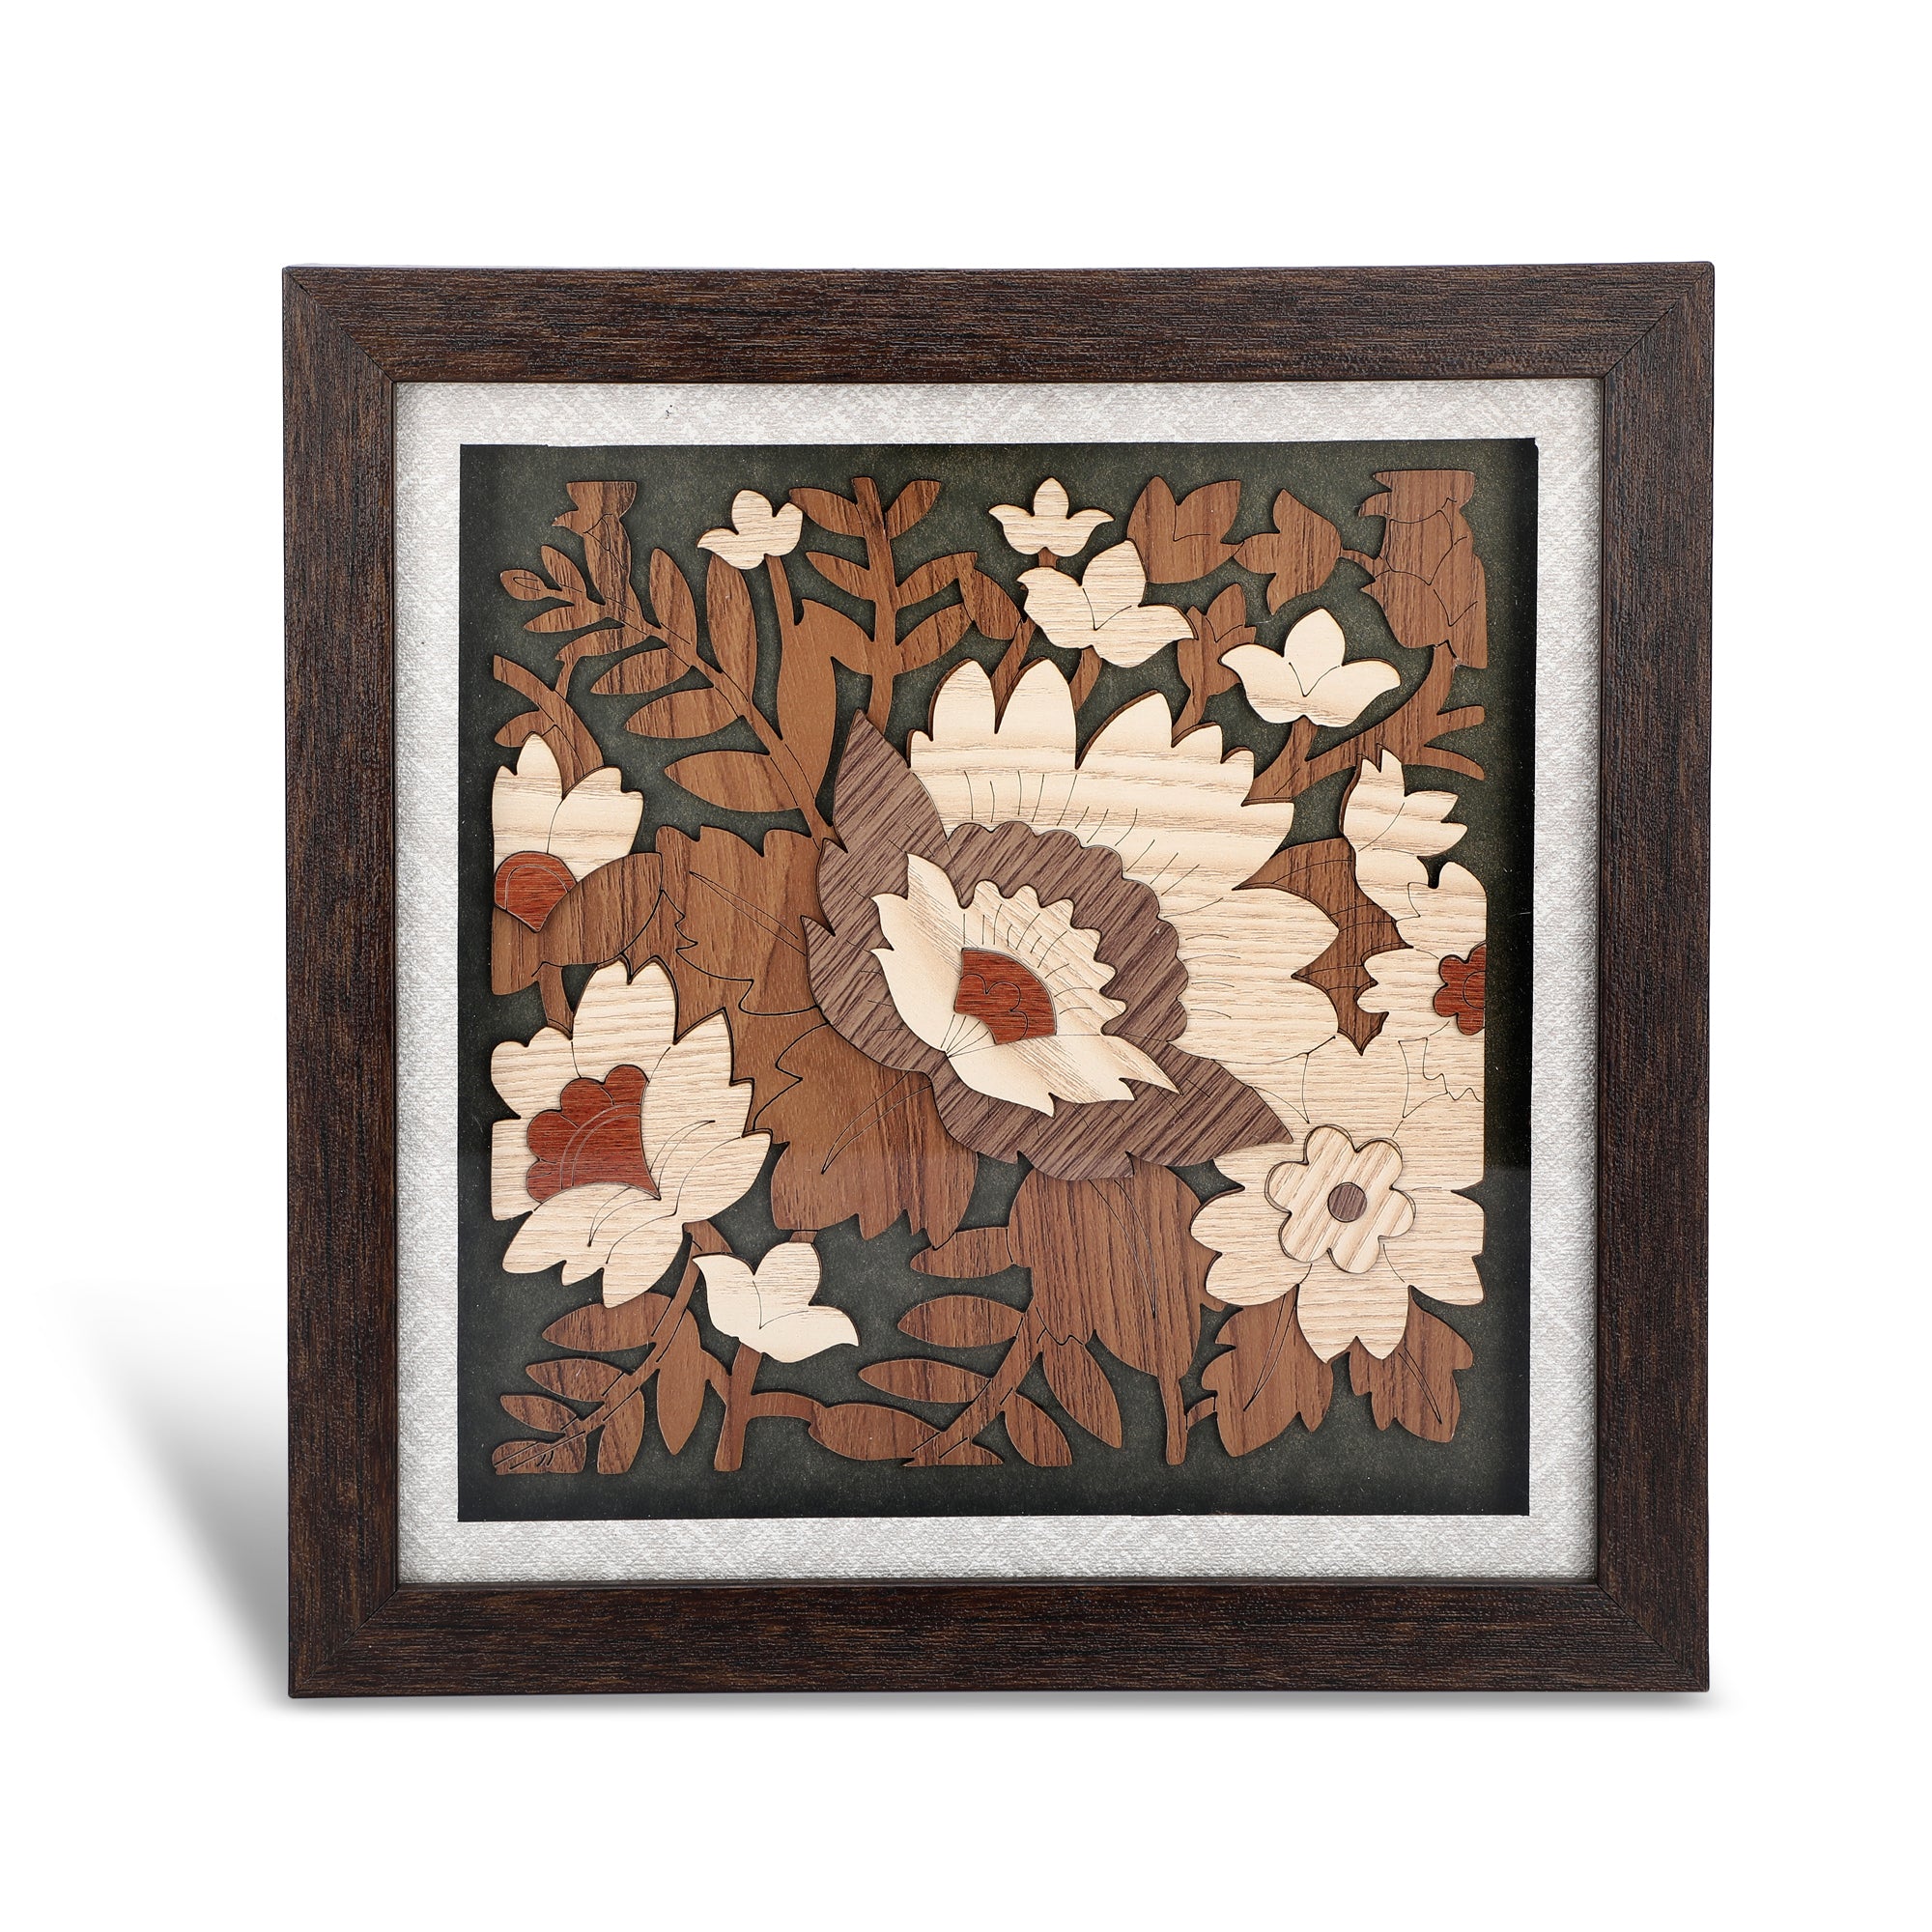 Flower Garden - 3d Wooden Layer Frame